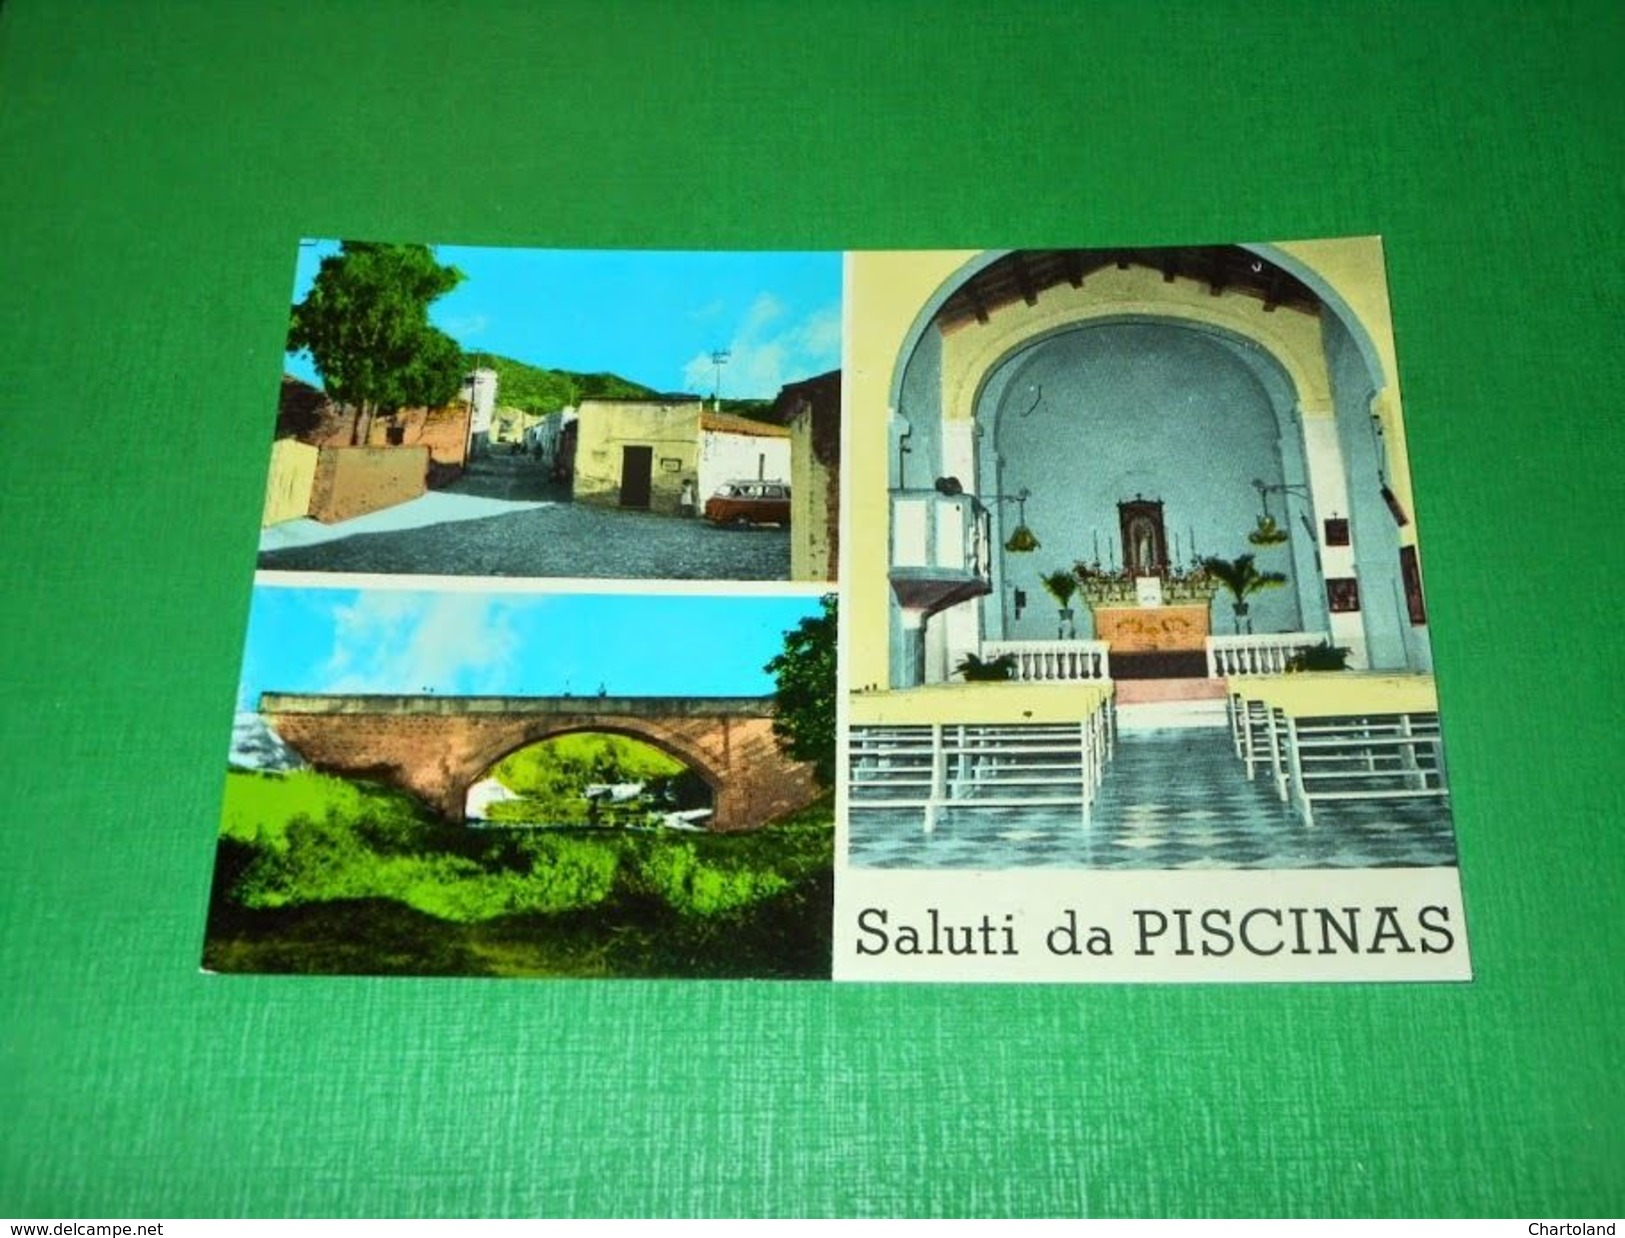 Cartolina Saluti Da Piscinas - Vedute Diverse 1960 Ca - Cagliari